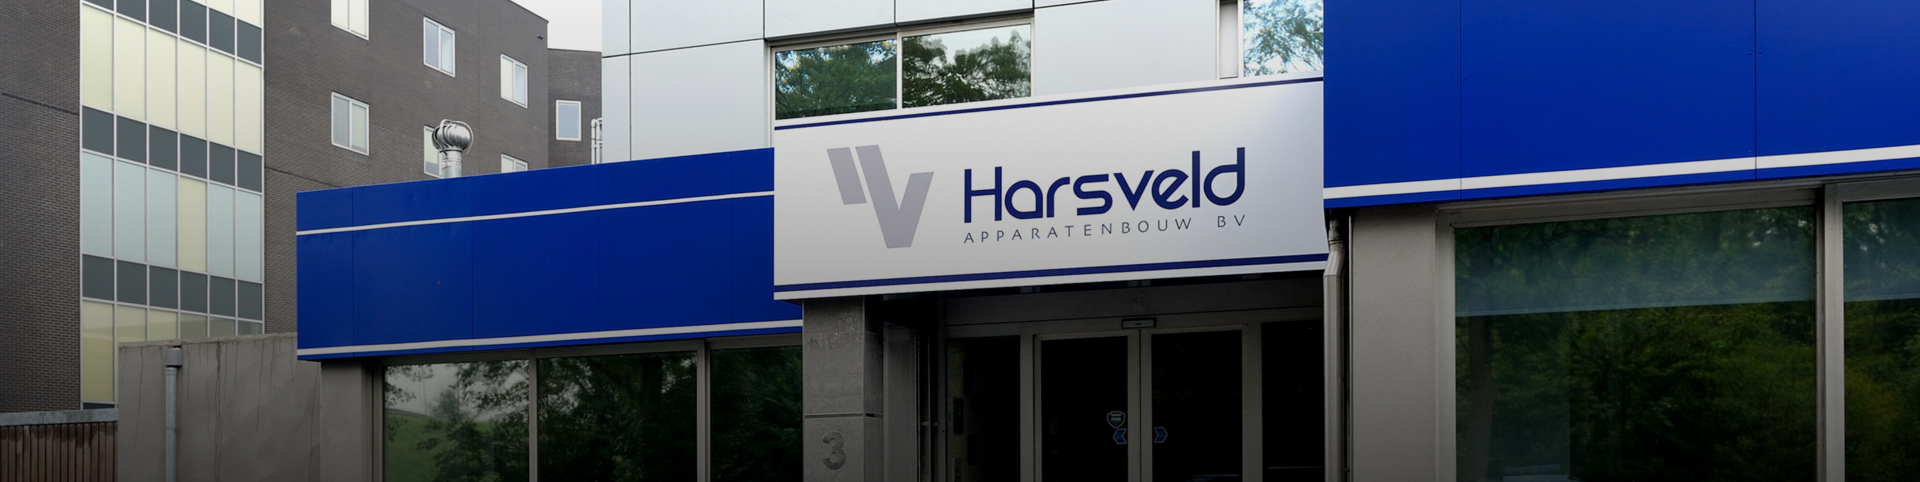 harsveld-banner.png